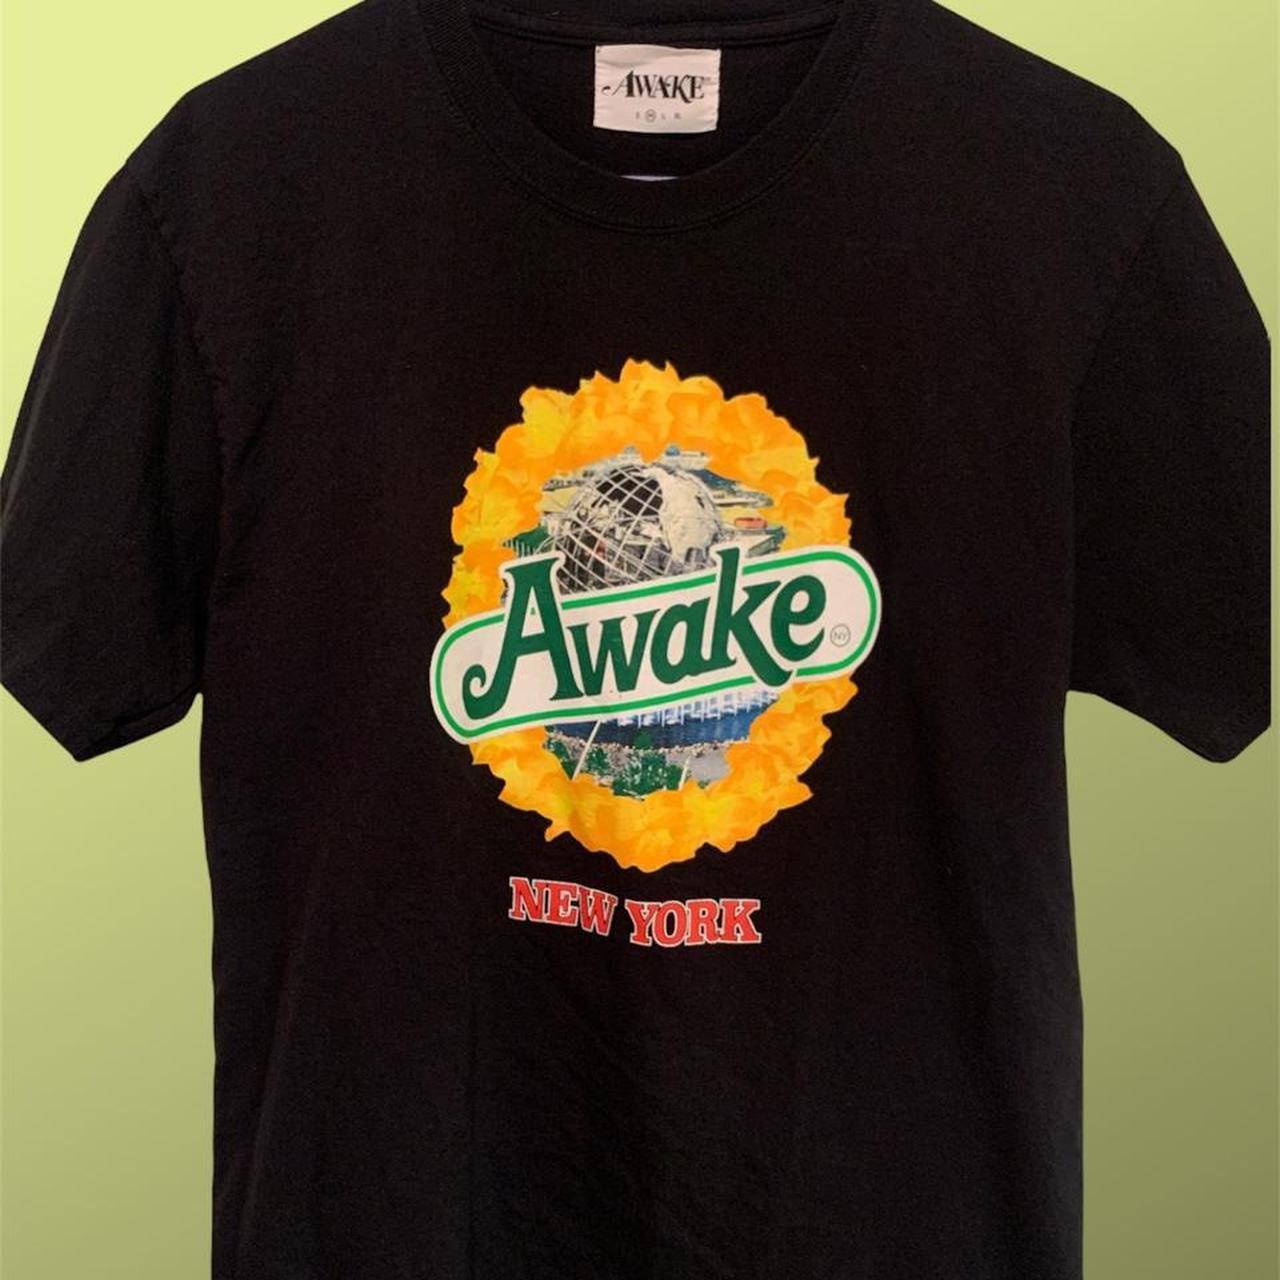 Product Image 1 - Awake Strawberry kiwi snapple logo